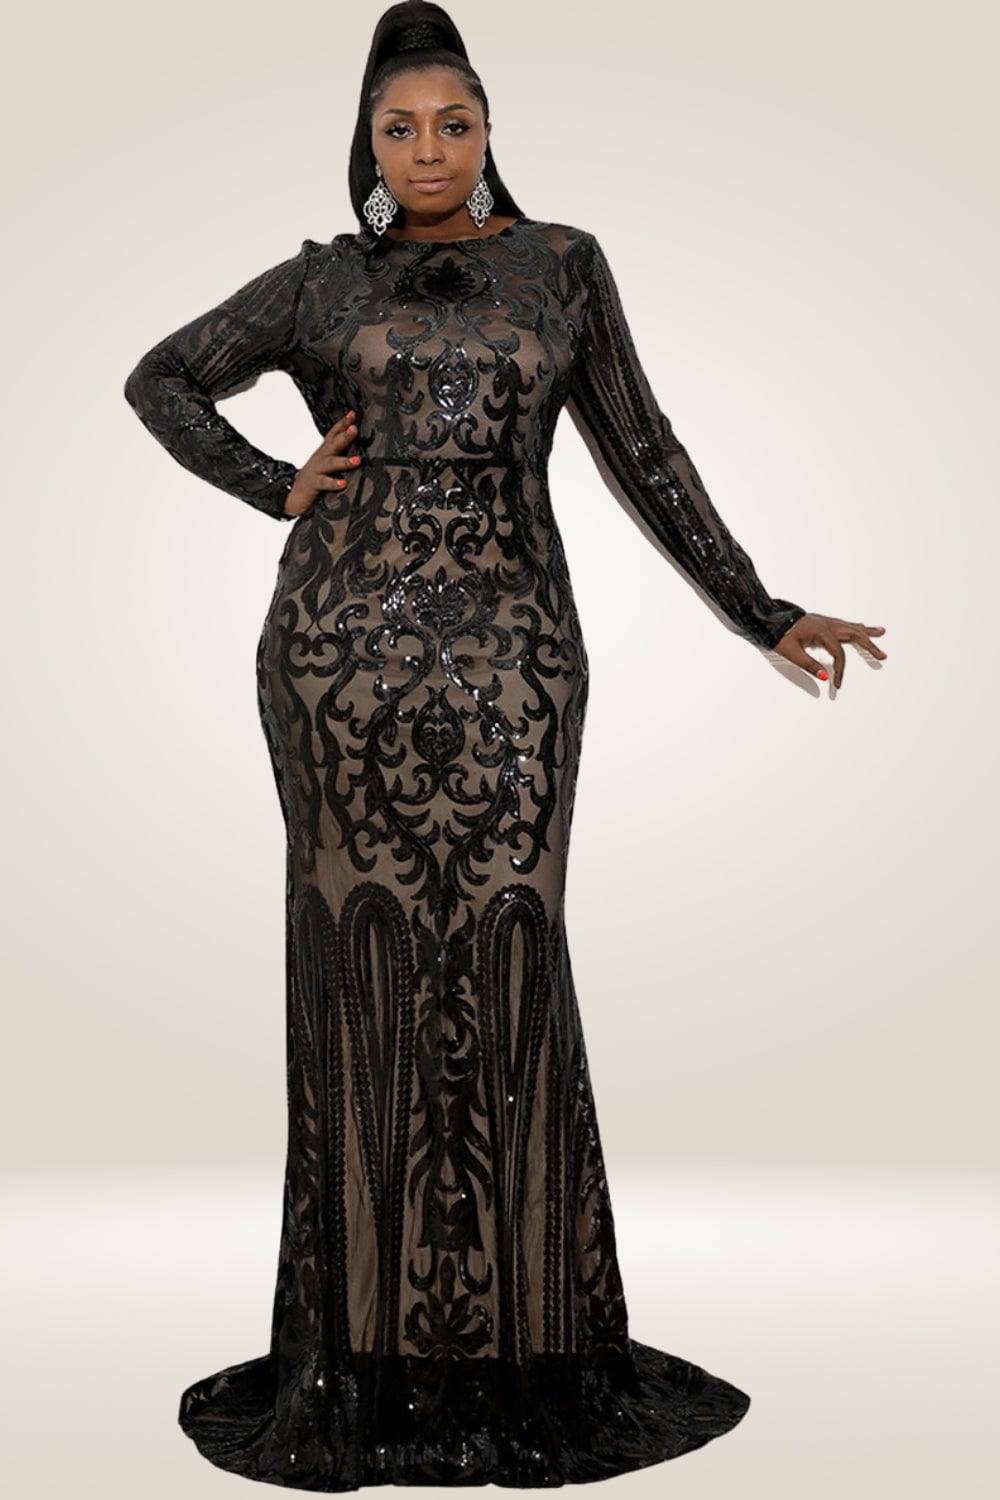 Plus Size Maxi Black Sequin Dress - TGC Boutique - Plus Size Dress